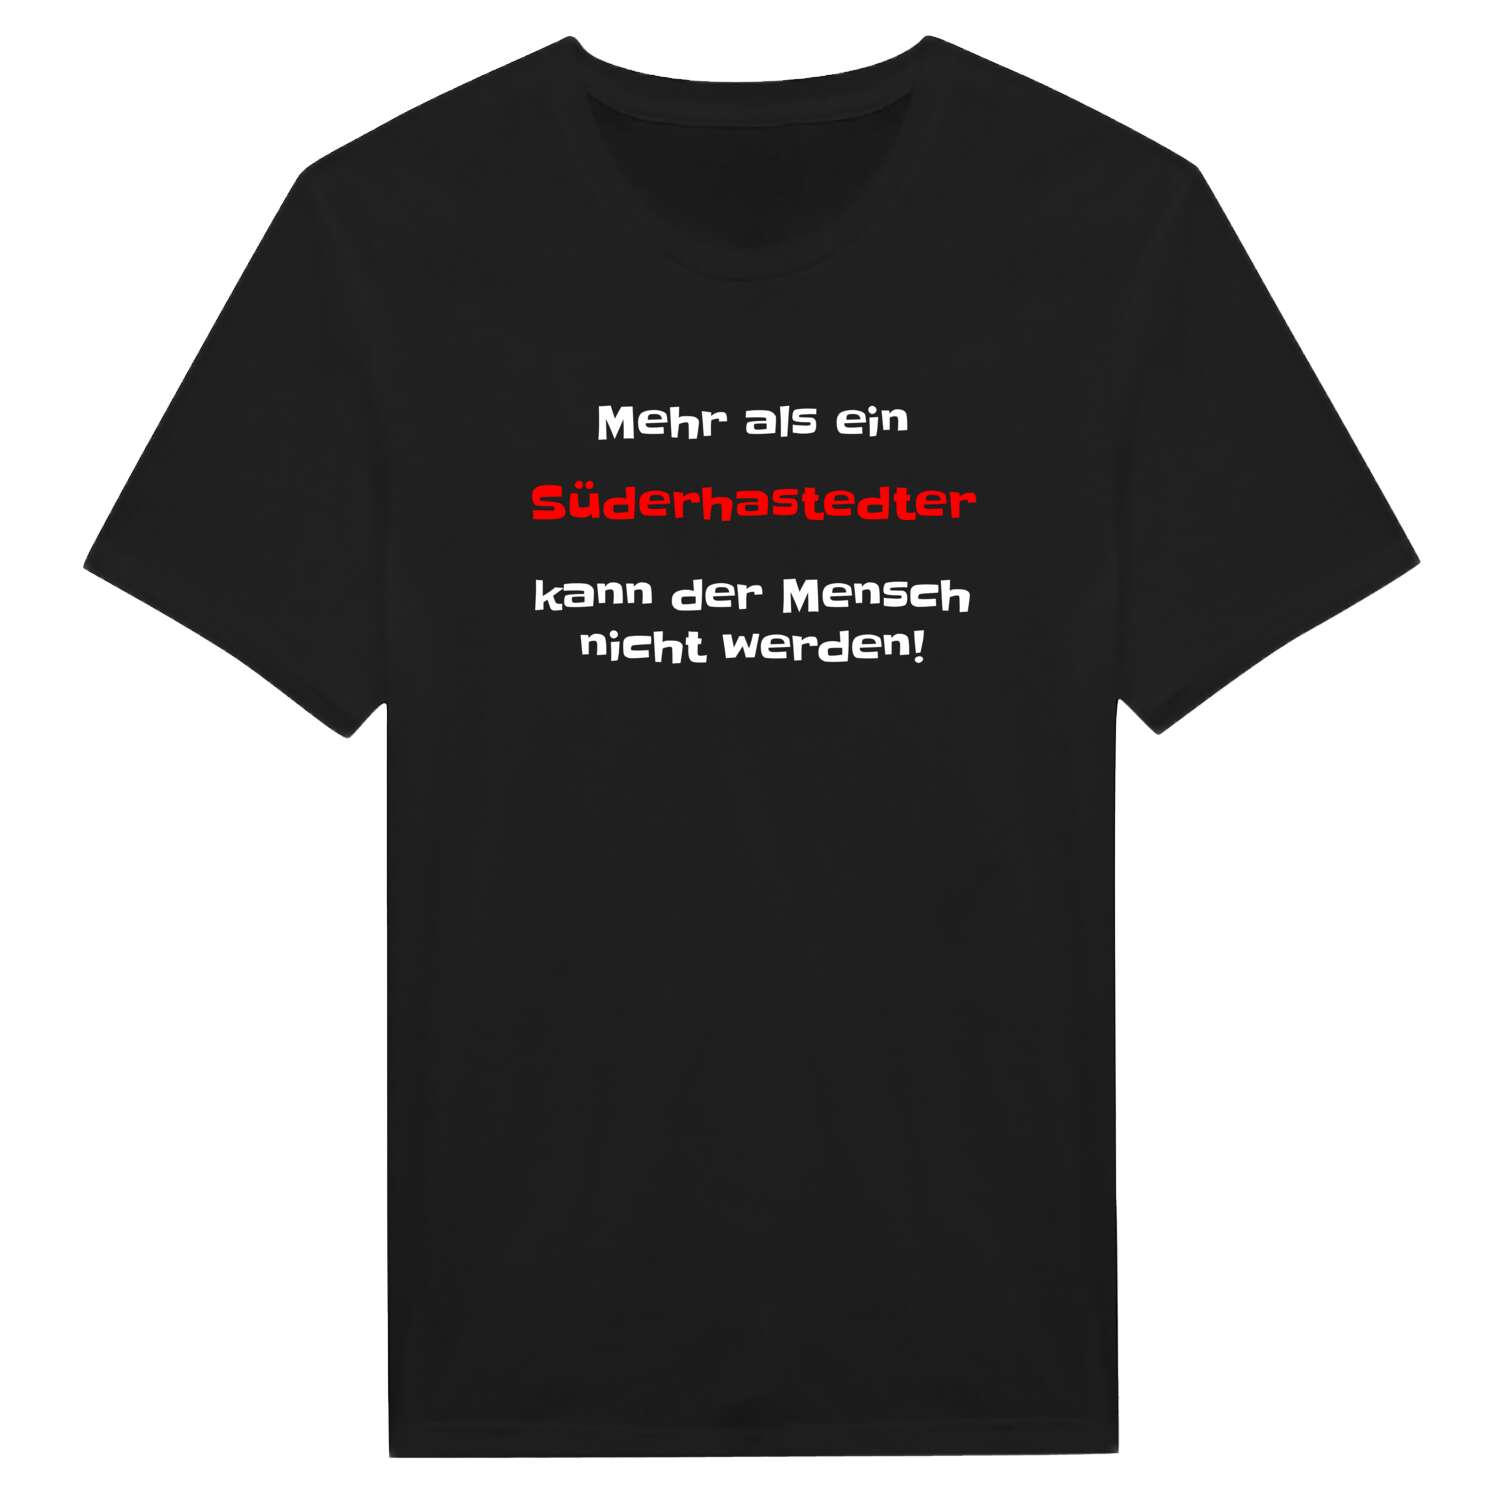 Süderhastedt T-Shirt »Mehr als ein«